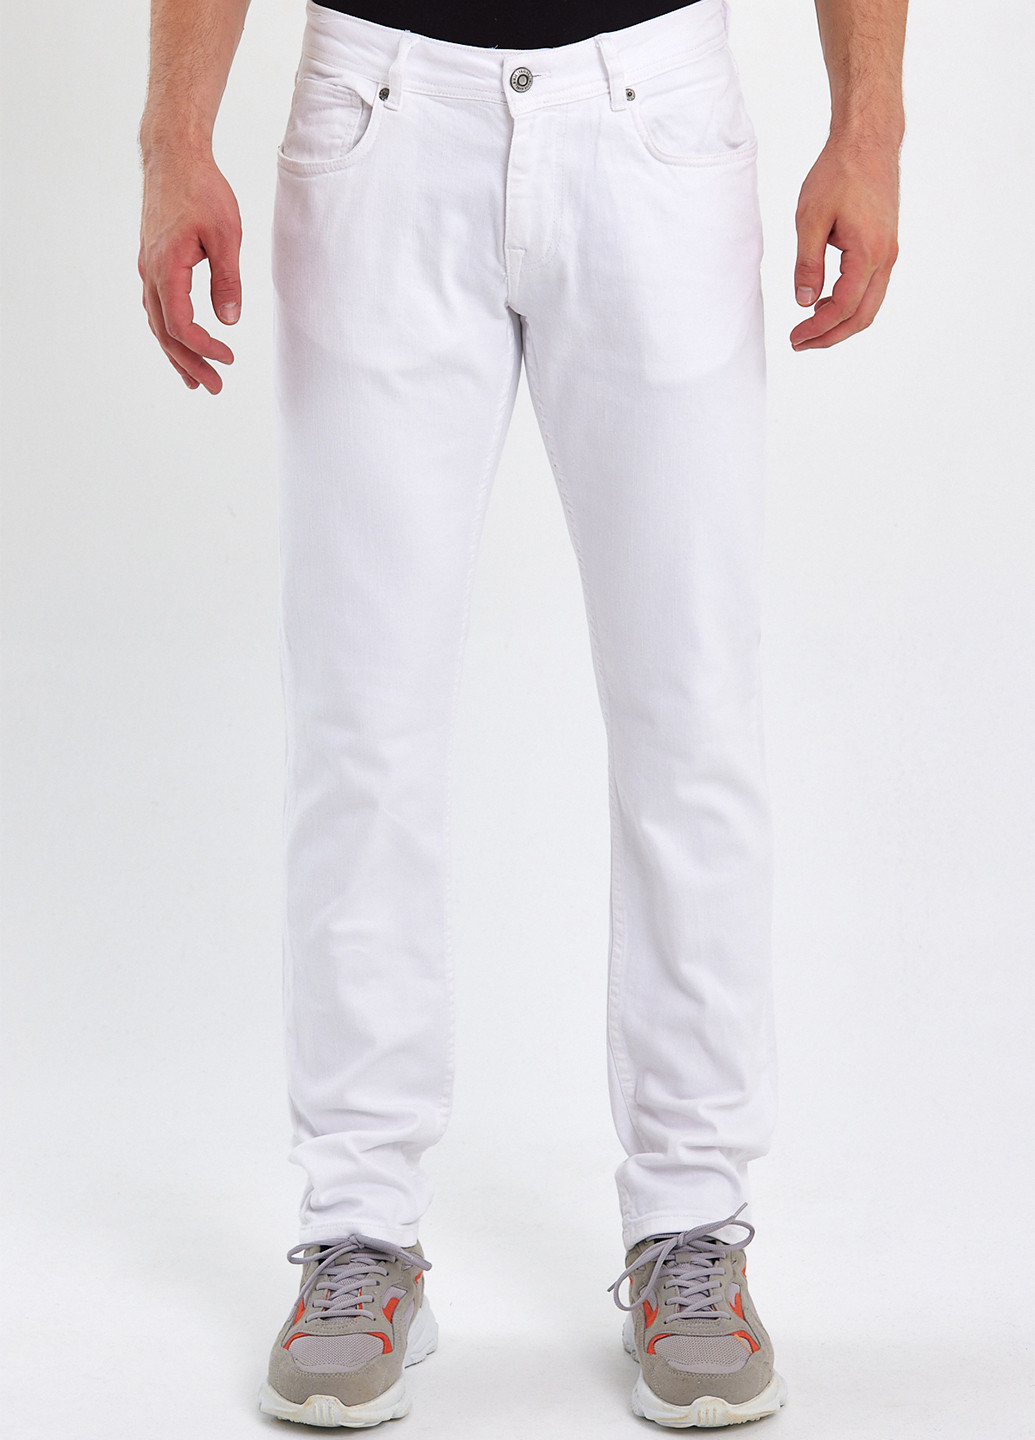 Белые летние слим джинсы Trend Collection